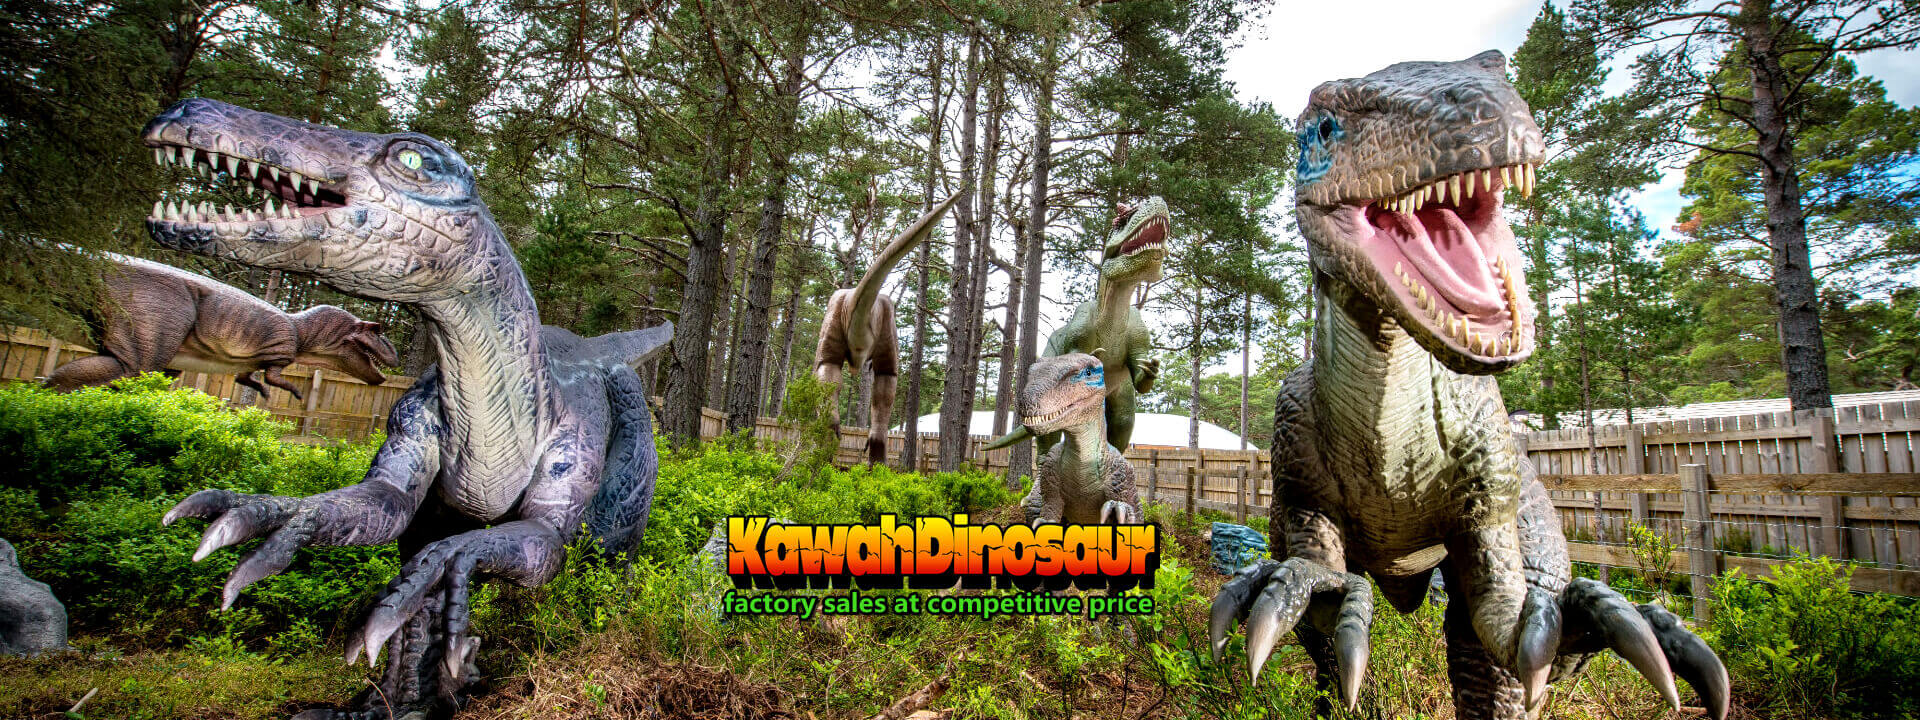 I-kawah dinosaur slide banner 1